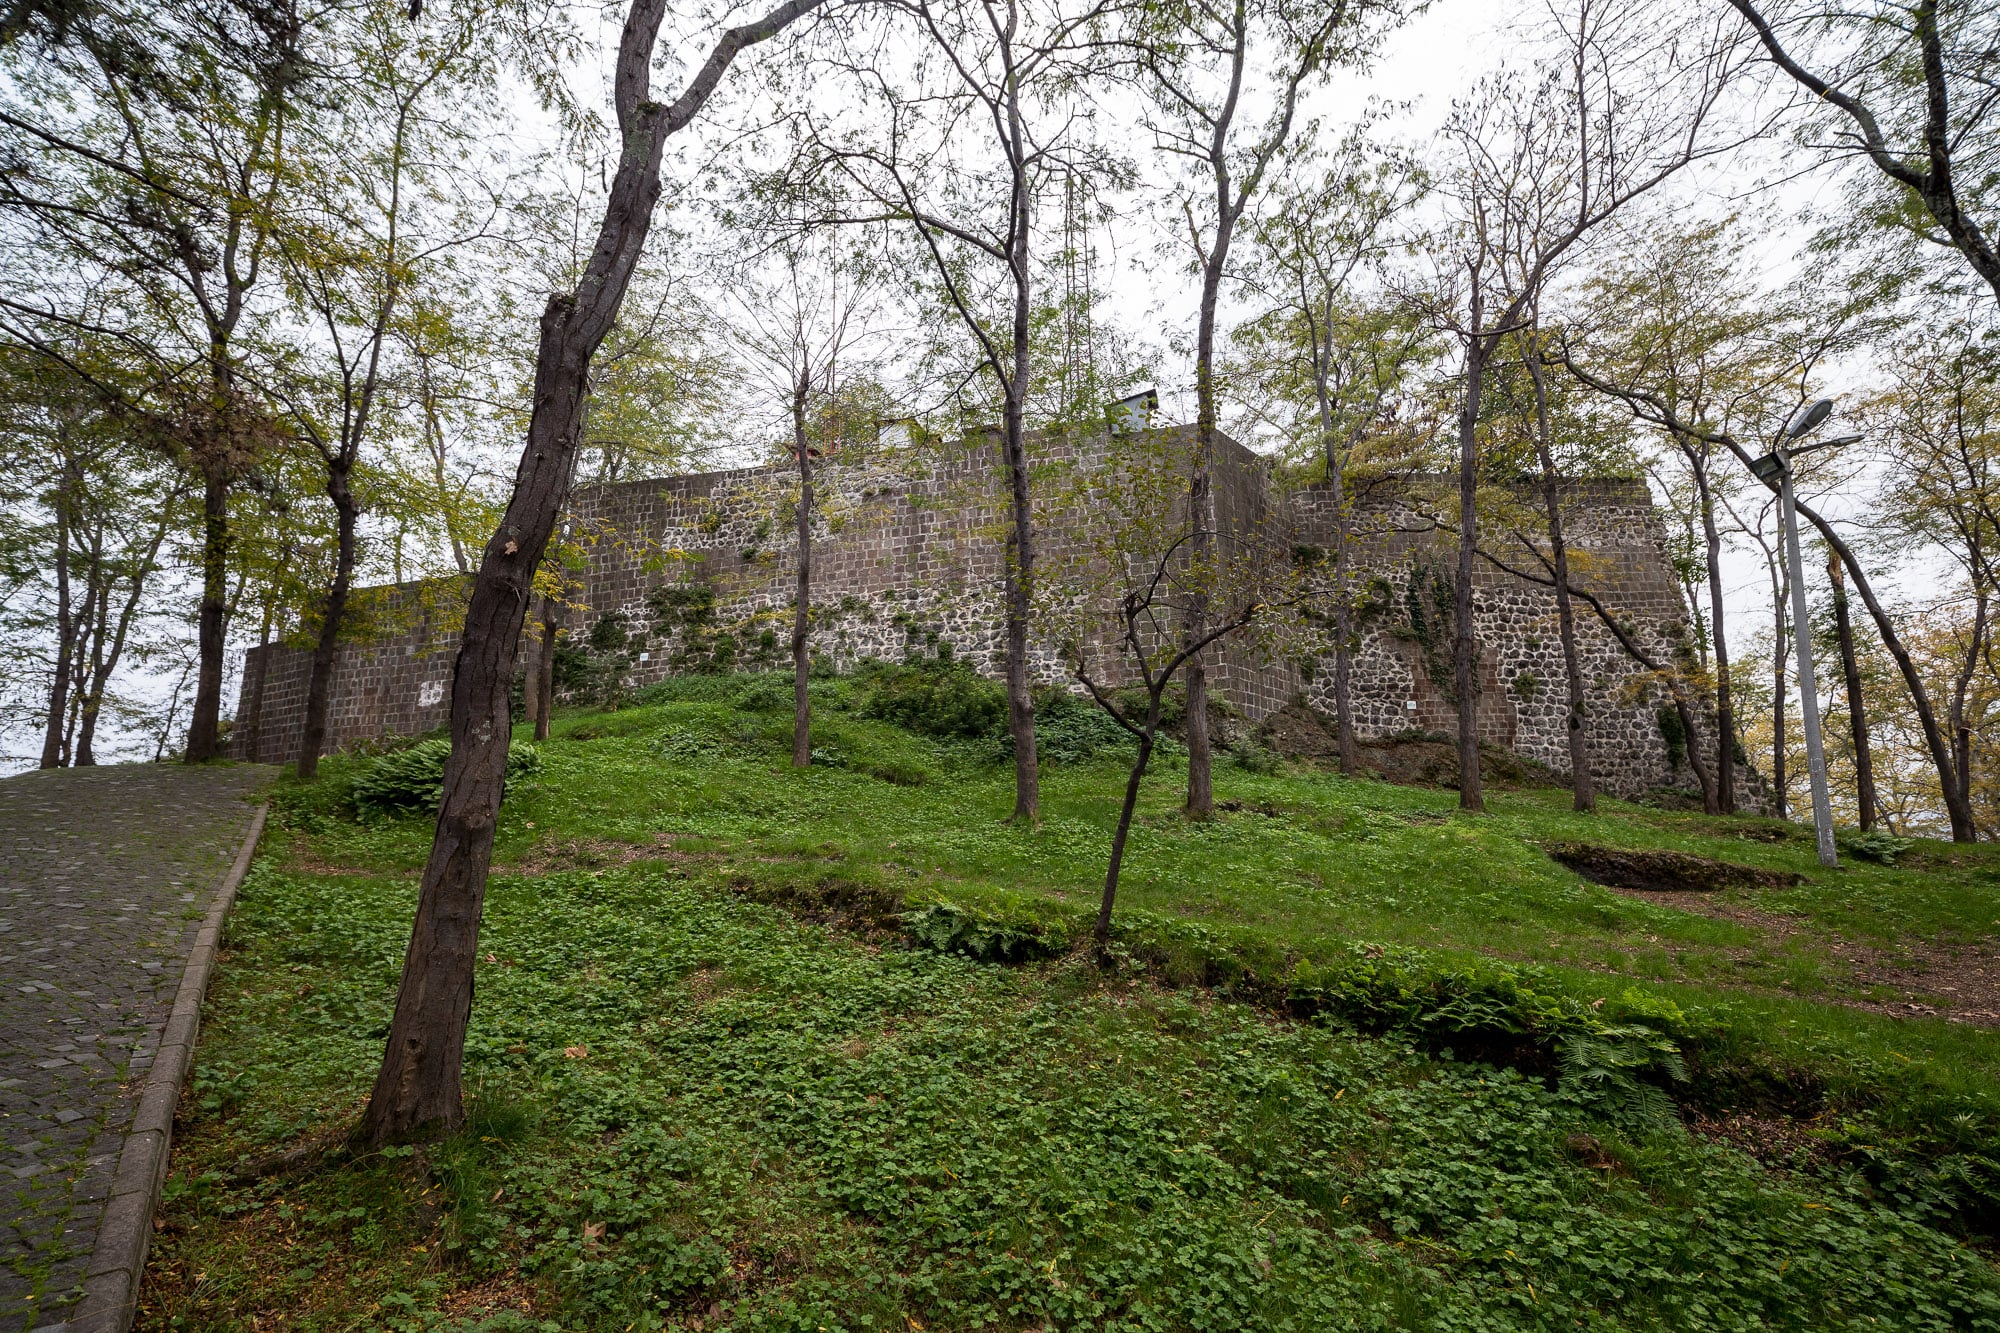 Giresun Castle